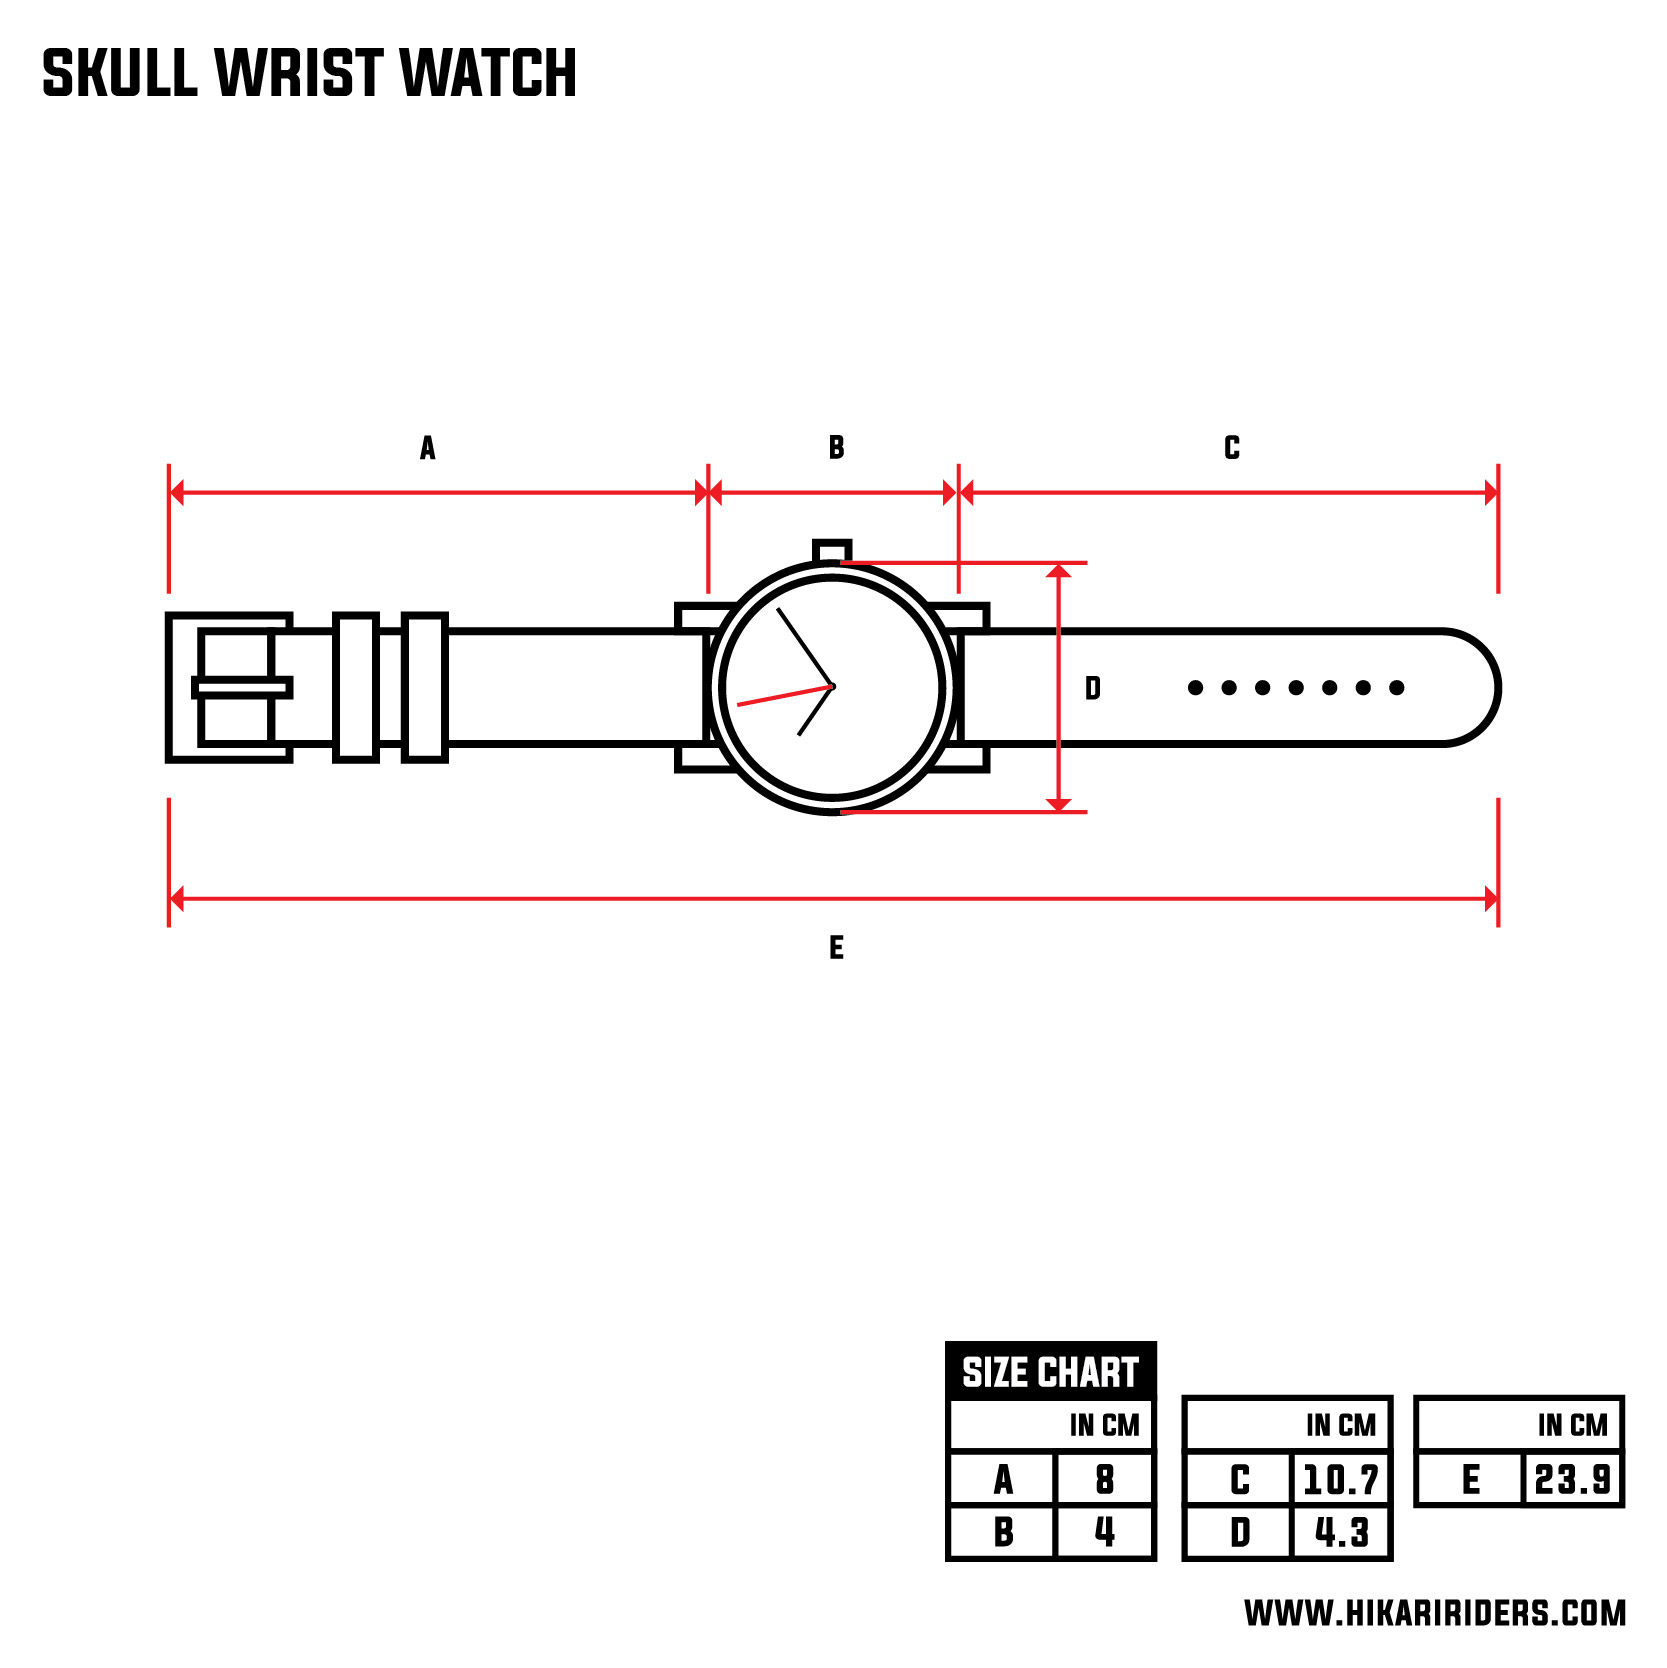 Skull Wrist Watch.jpg